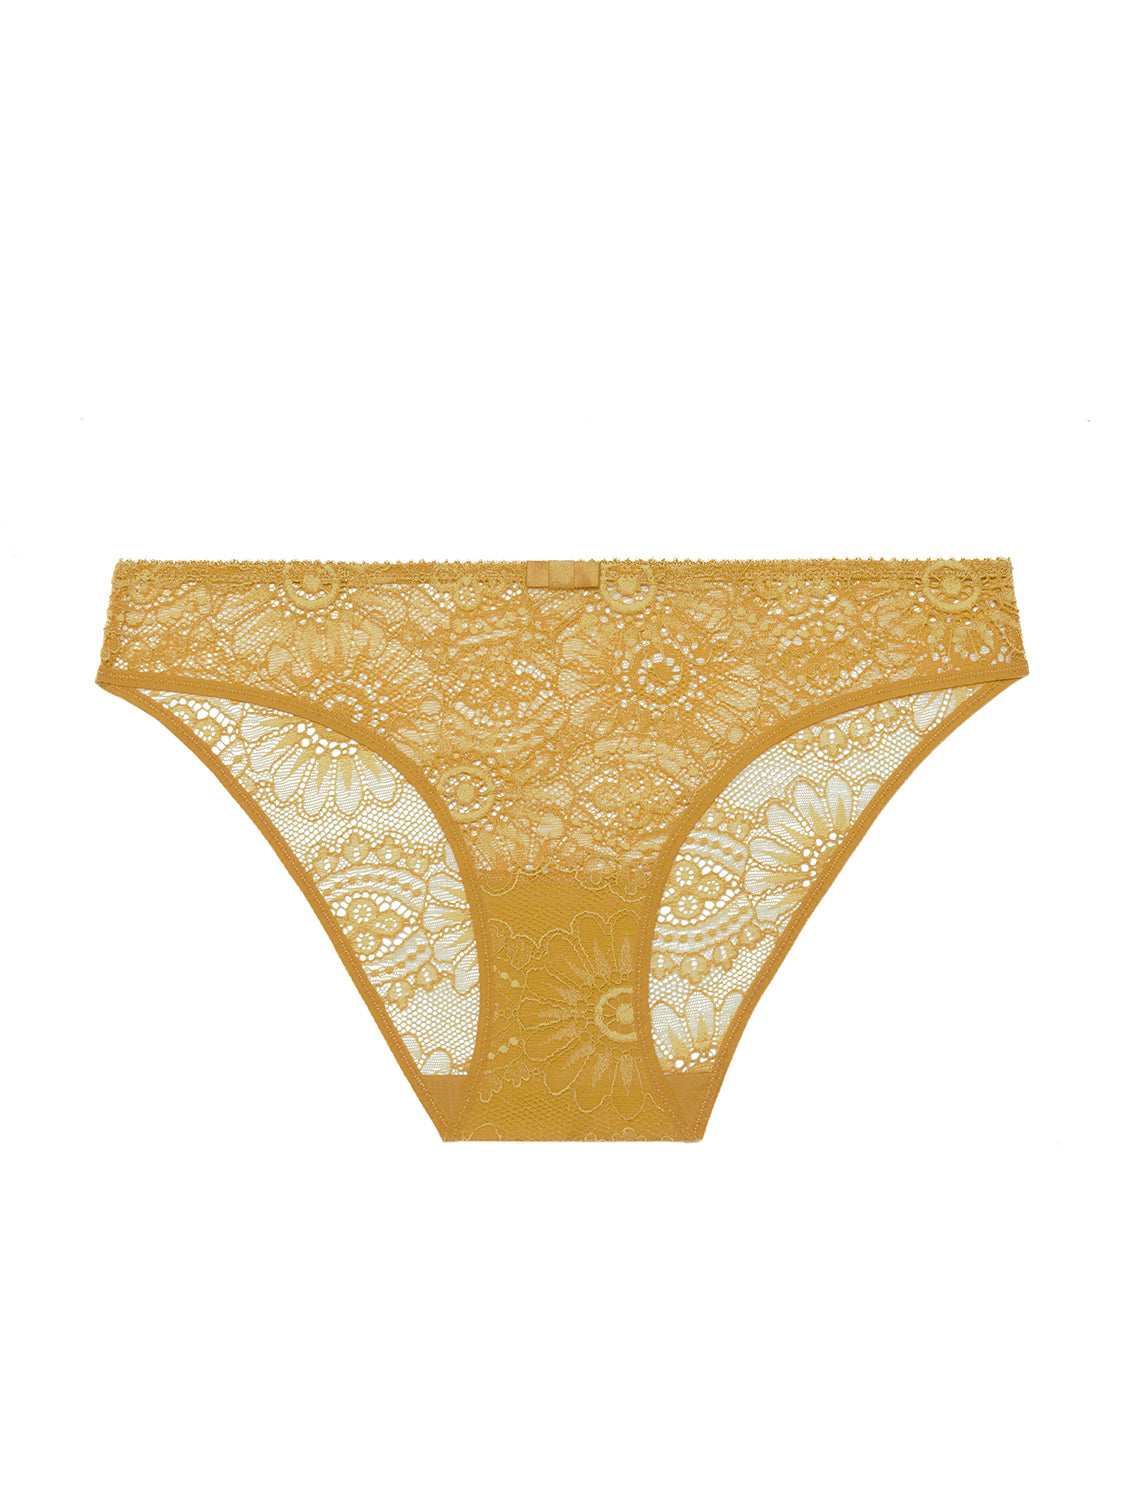 Celine Soft Bra in Golden Yellow – Pigalle Lingerie